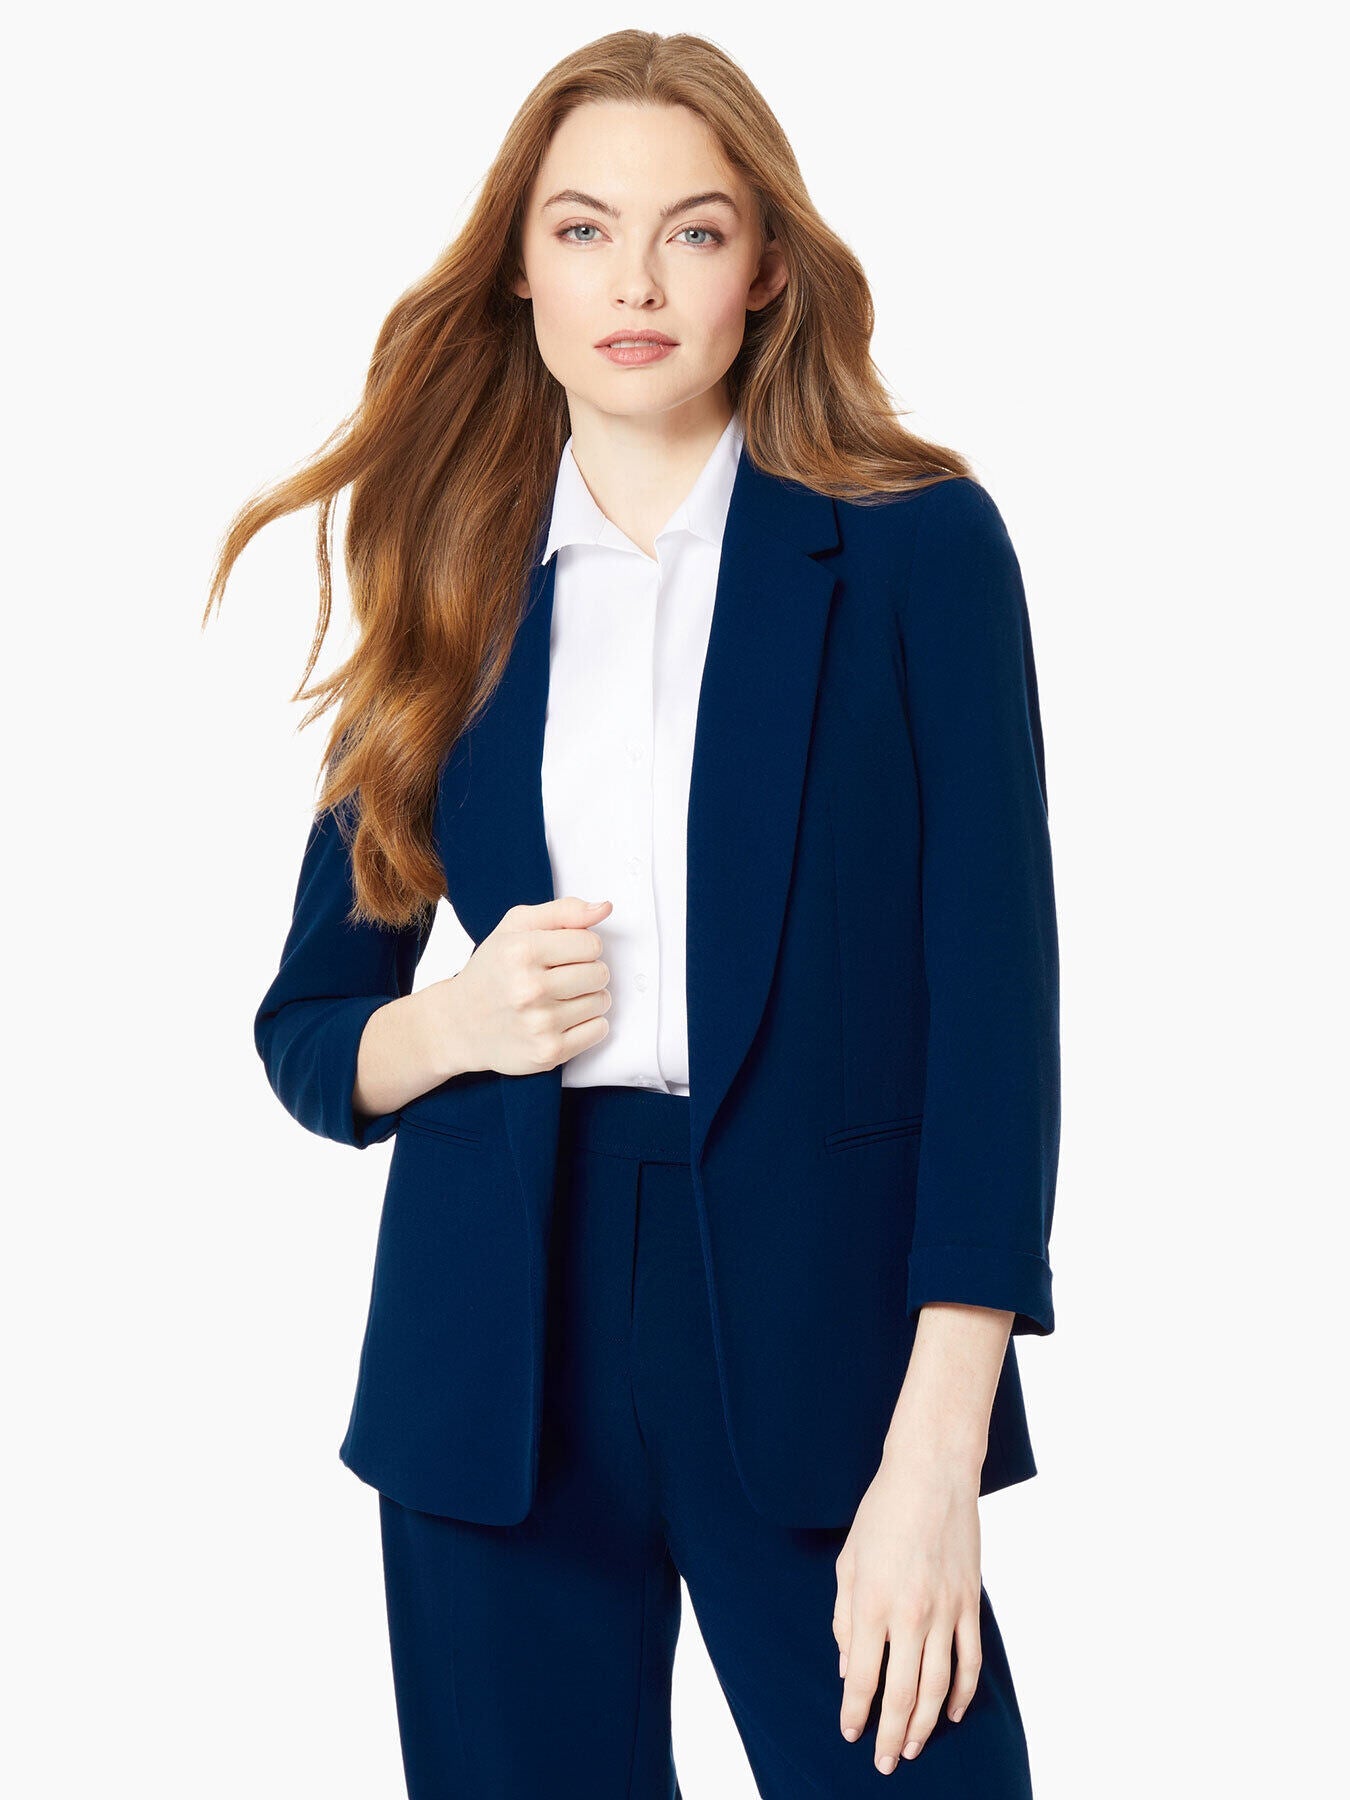 Women's Suits - Professional Women's Business Attire